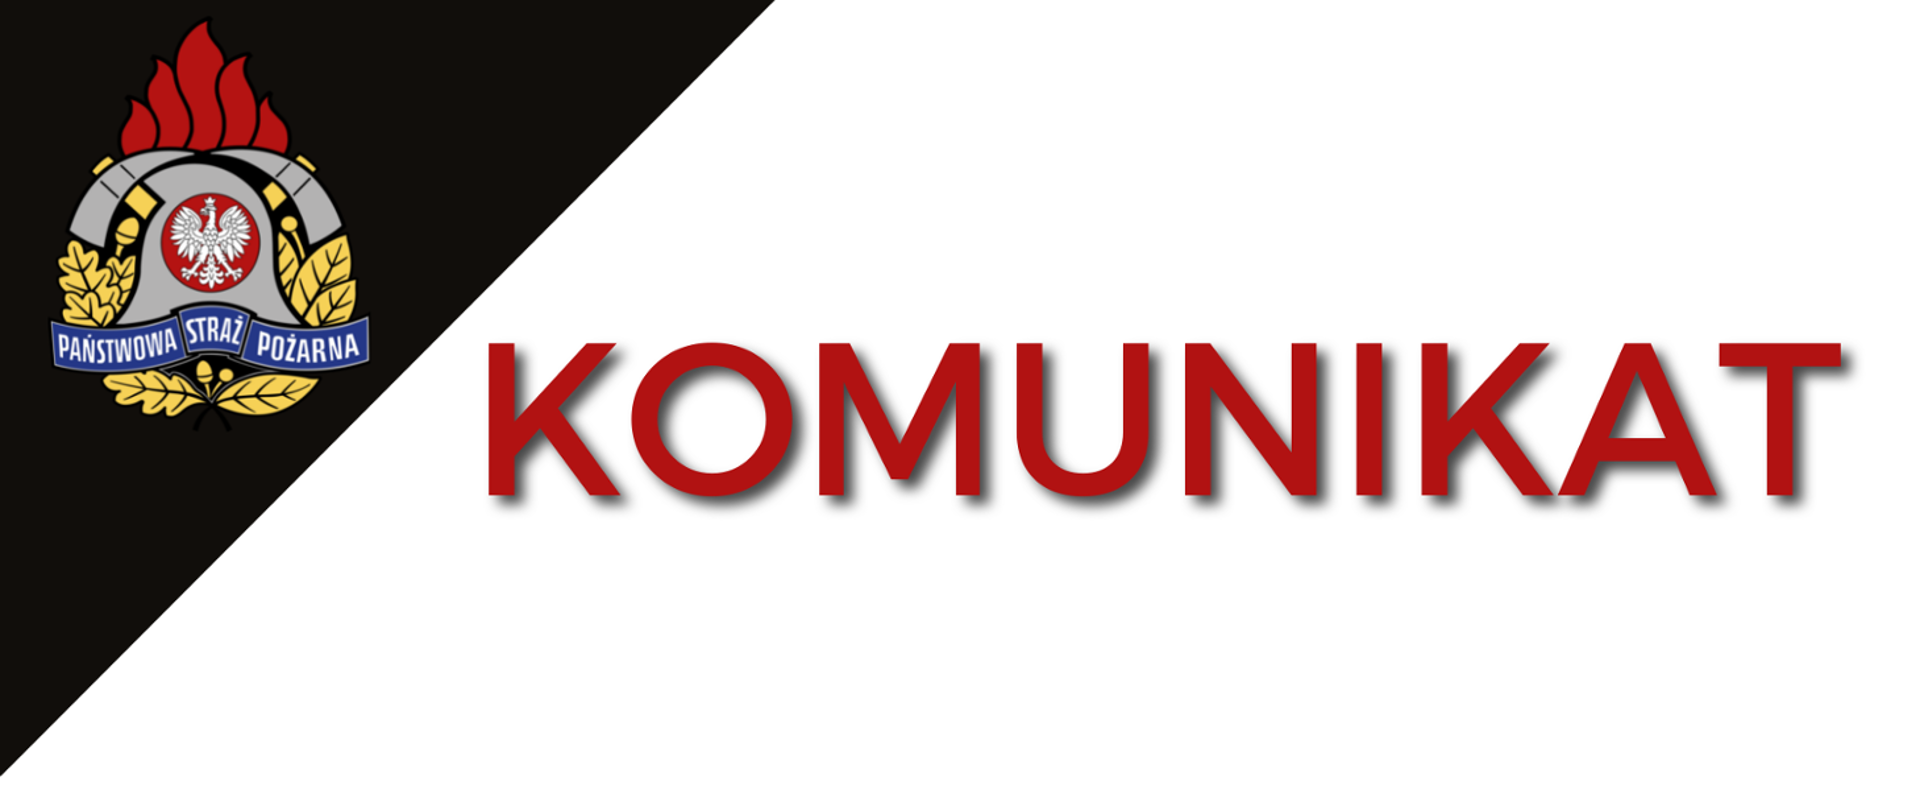 Zdjęcie przedstawia napis "KOMUNIKAT" oraz logo PSP.